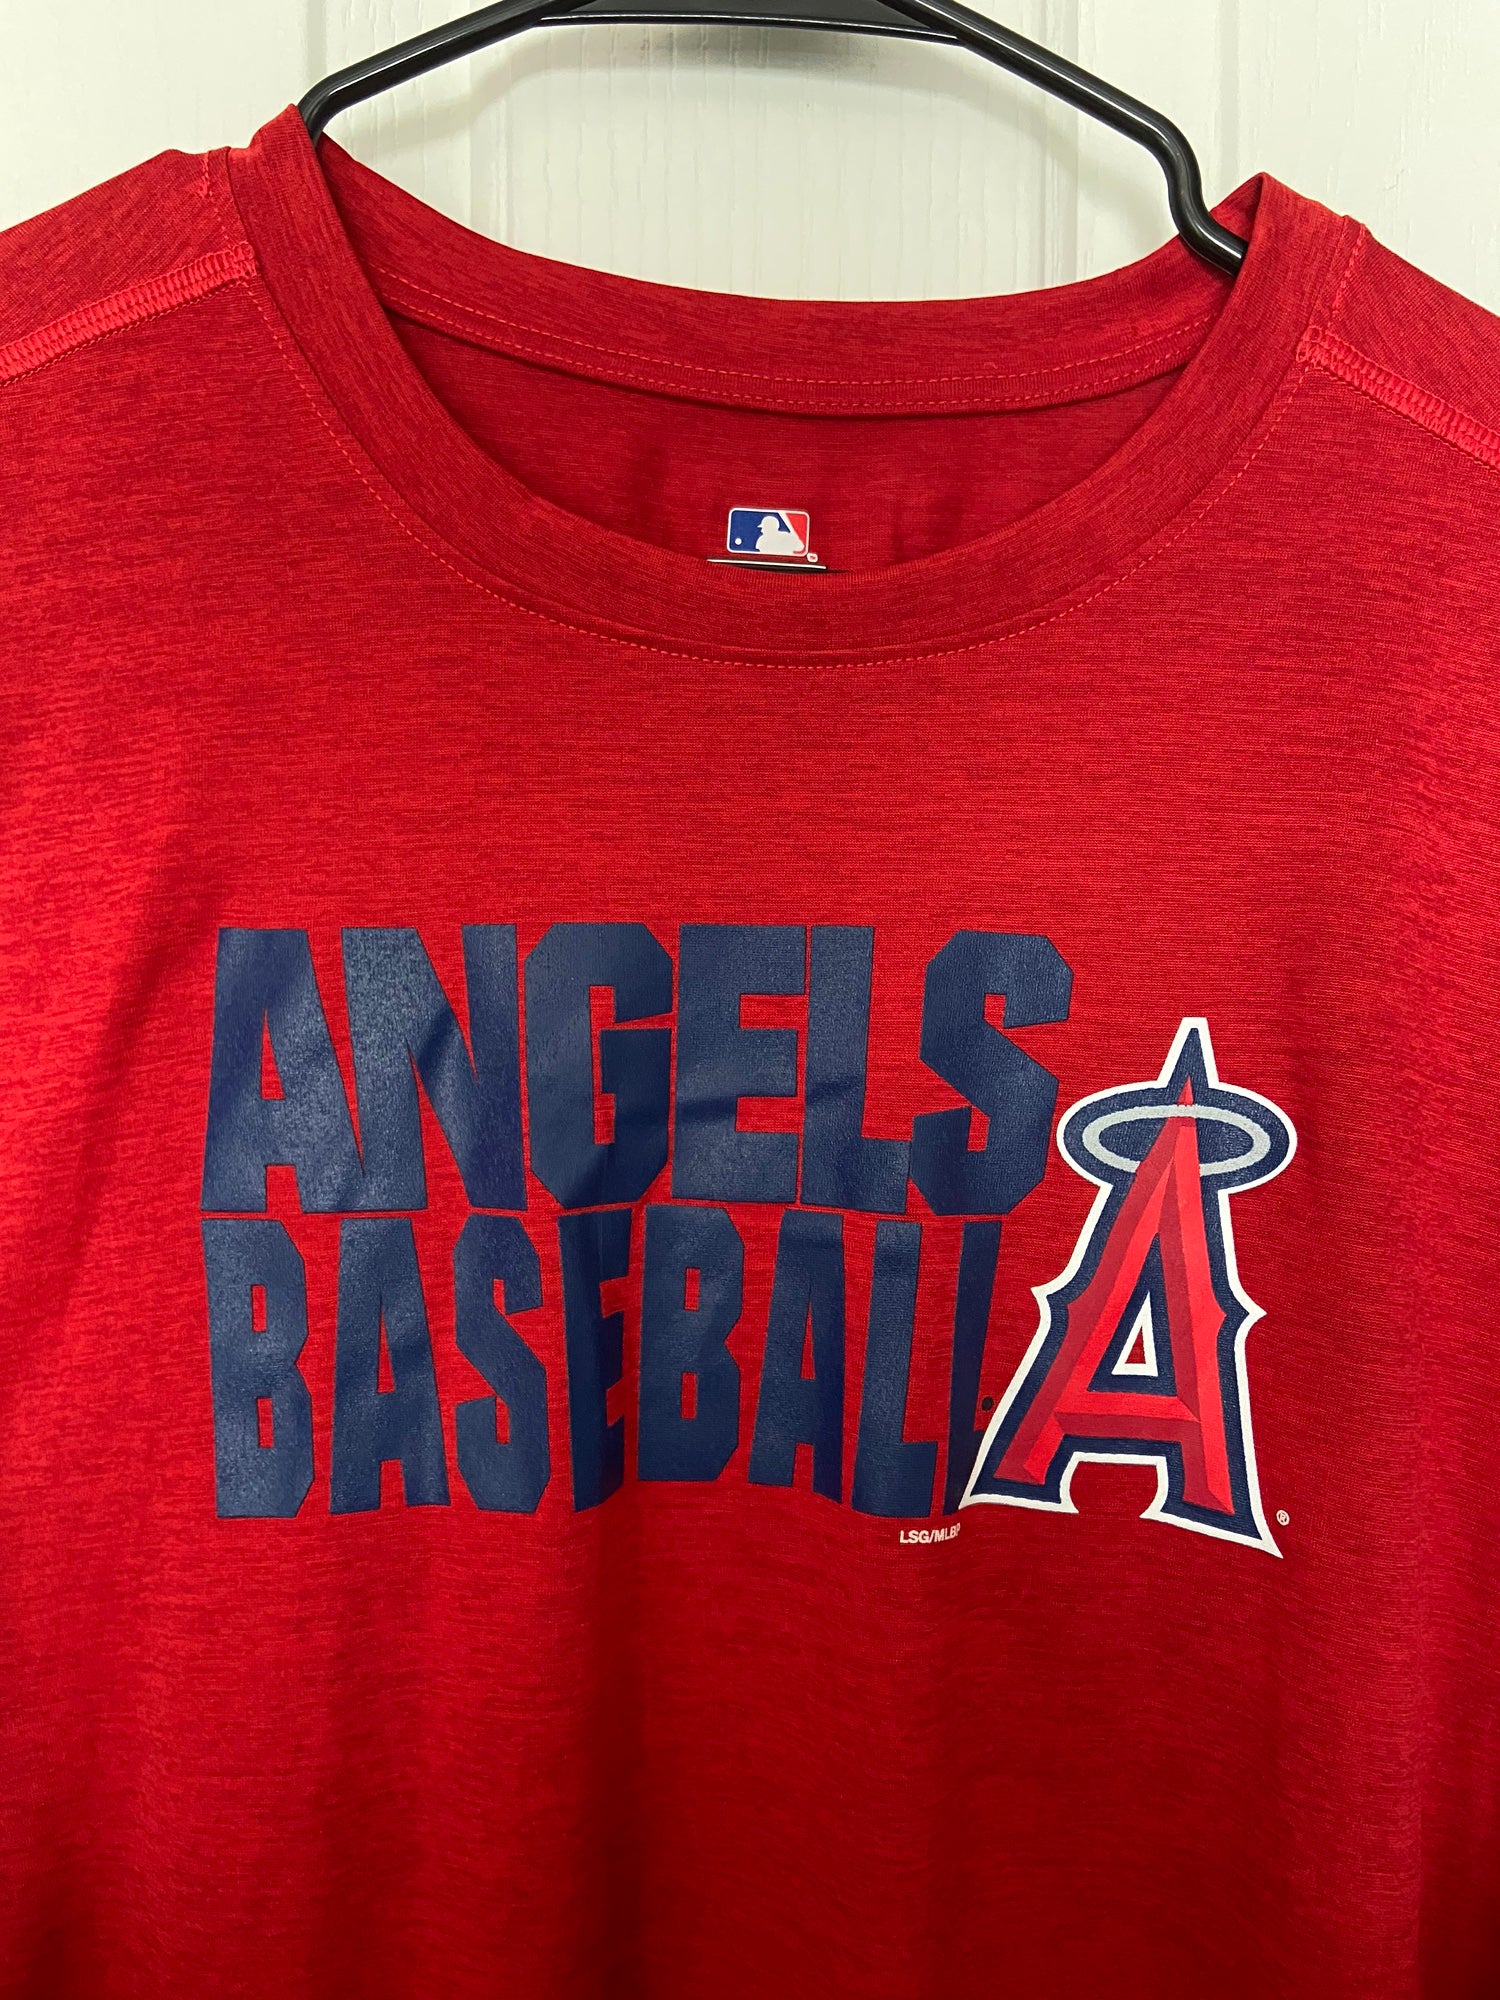 Los Angeles Angels T-Shirt, Angels Shirts, Angels Baseball Shirts